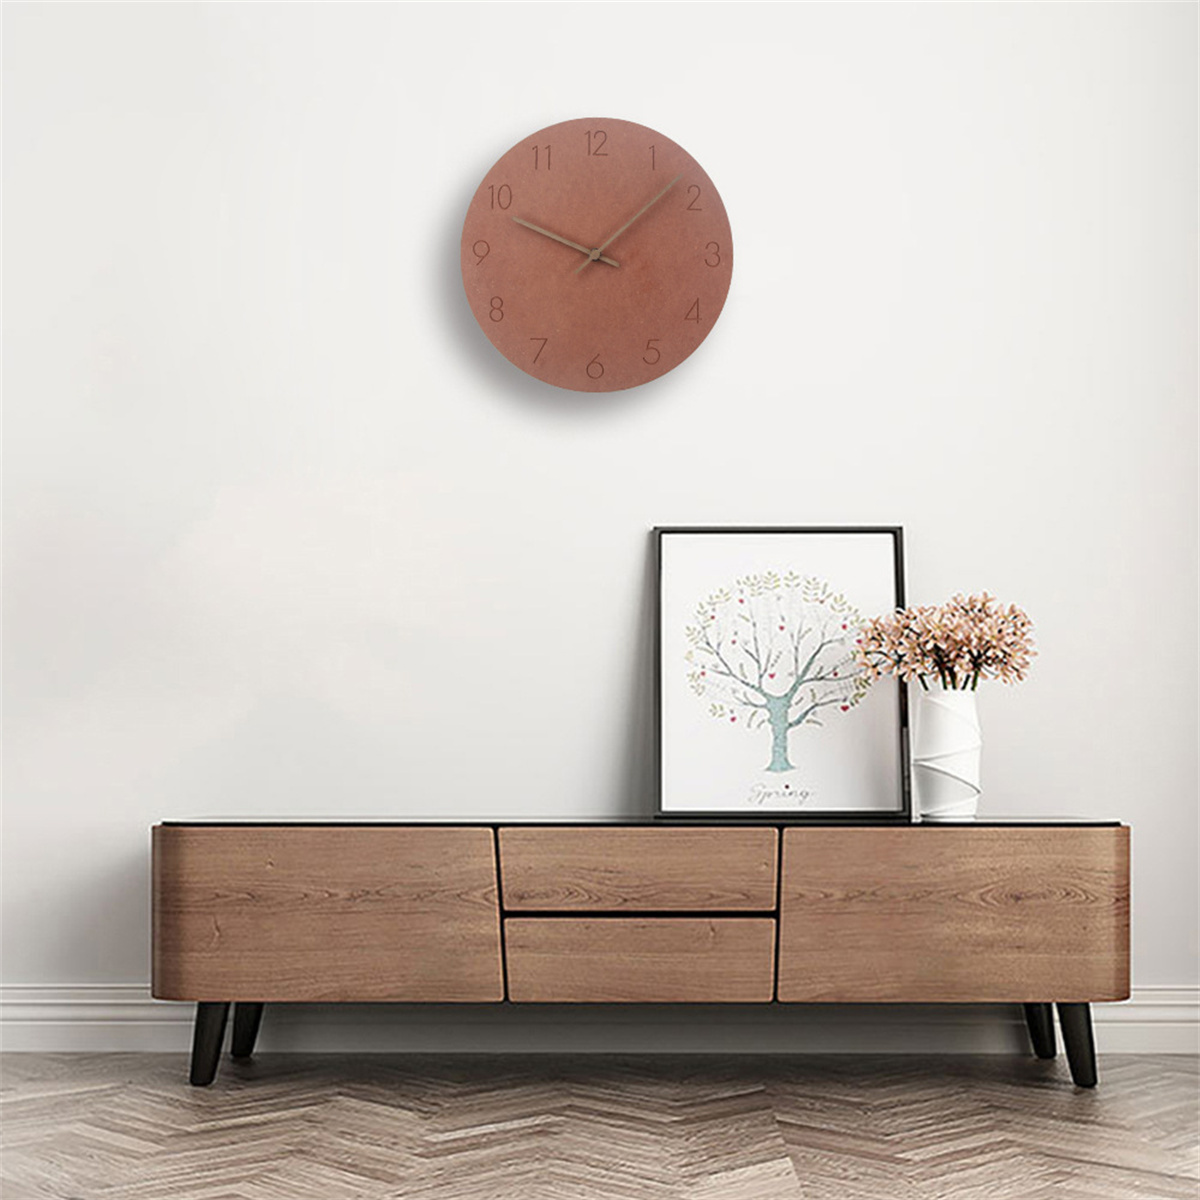 SYNTEK Uhr minimalistische Wanduhr Holz hängen Wohnzimmer aus kreativ Uhren stumm braun Wanduhr